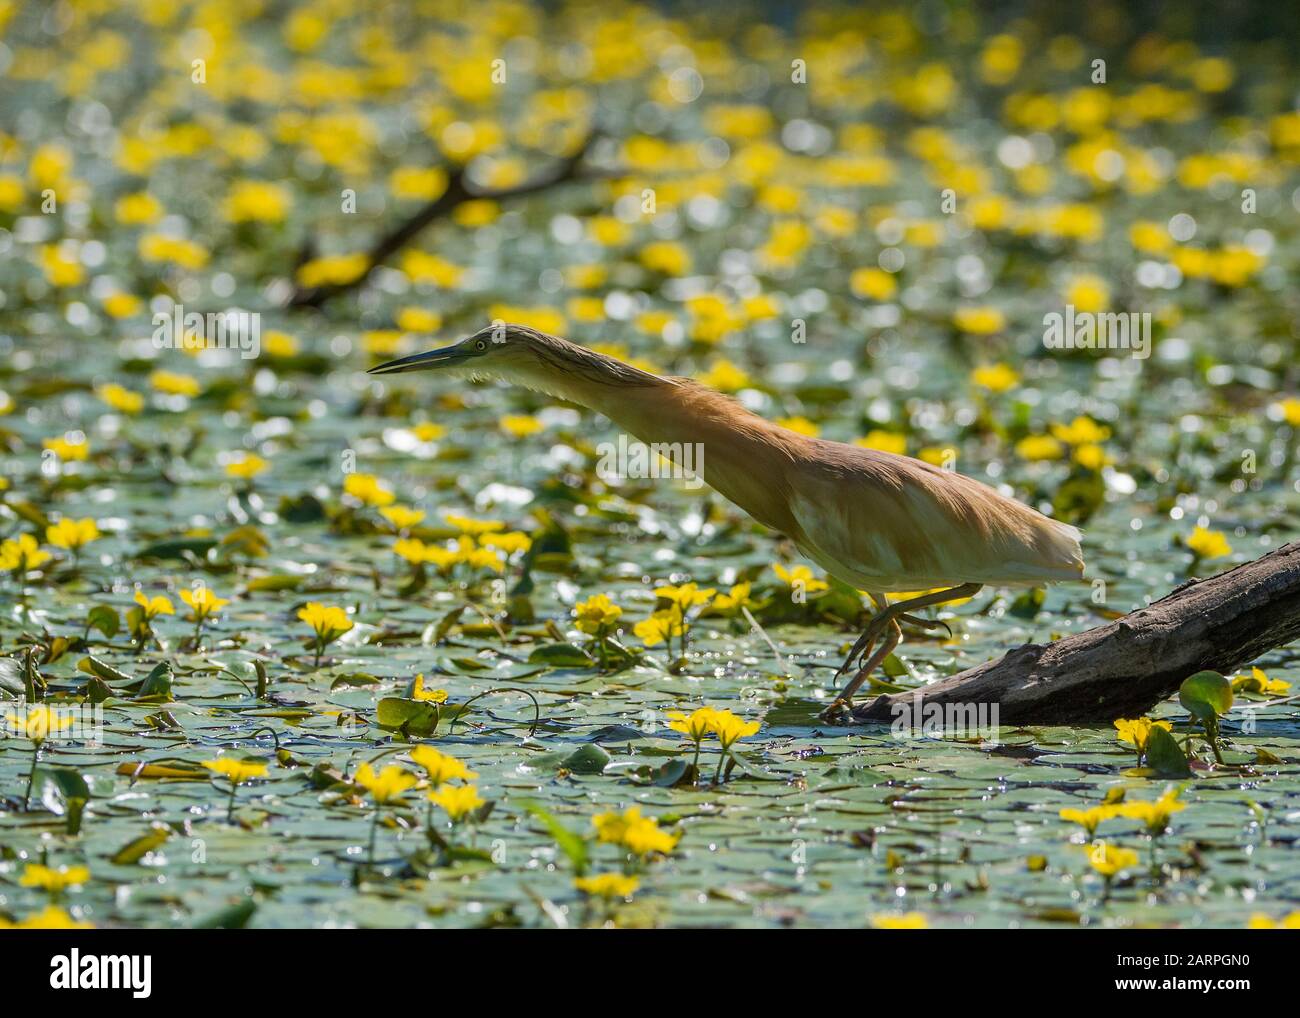 Squacco heron (Ardeola ralloides), caccia in laguna circondata da un cuore giallo galleggiante (Nymphoides peltata), Parco Nazionale Hortobágy, Ungheria Foto Stock